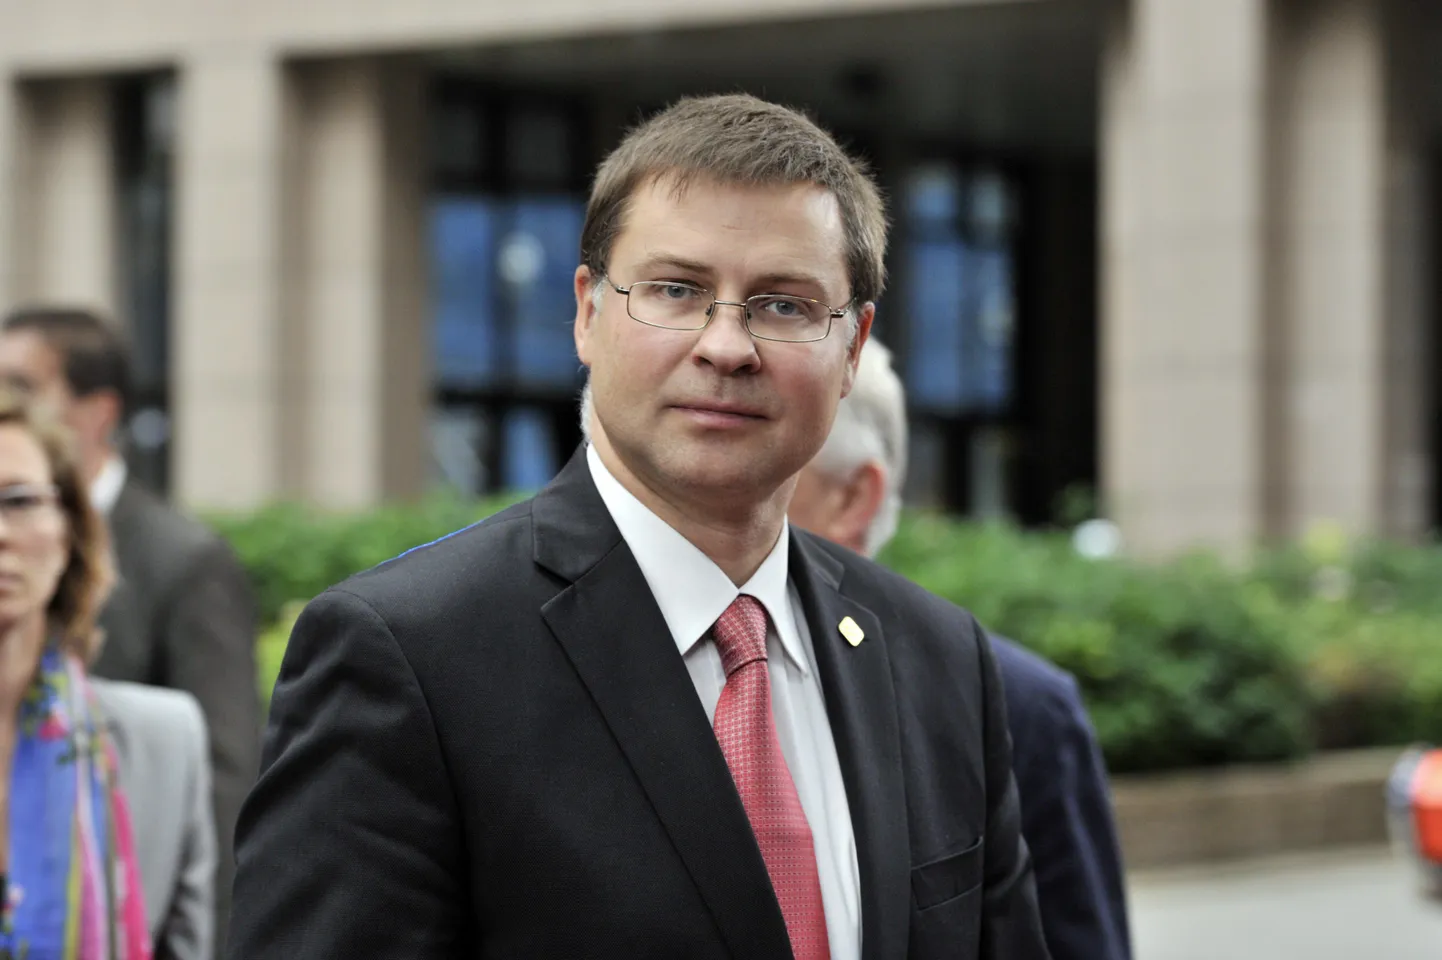 Läti praegune peaminister Dombrovskis teatas novembris otsusest tagasi astuda, võttes vastutuse 21. novembril Riias 54 inimese elu nõudnud kauplusevaringu eest.